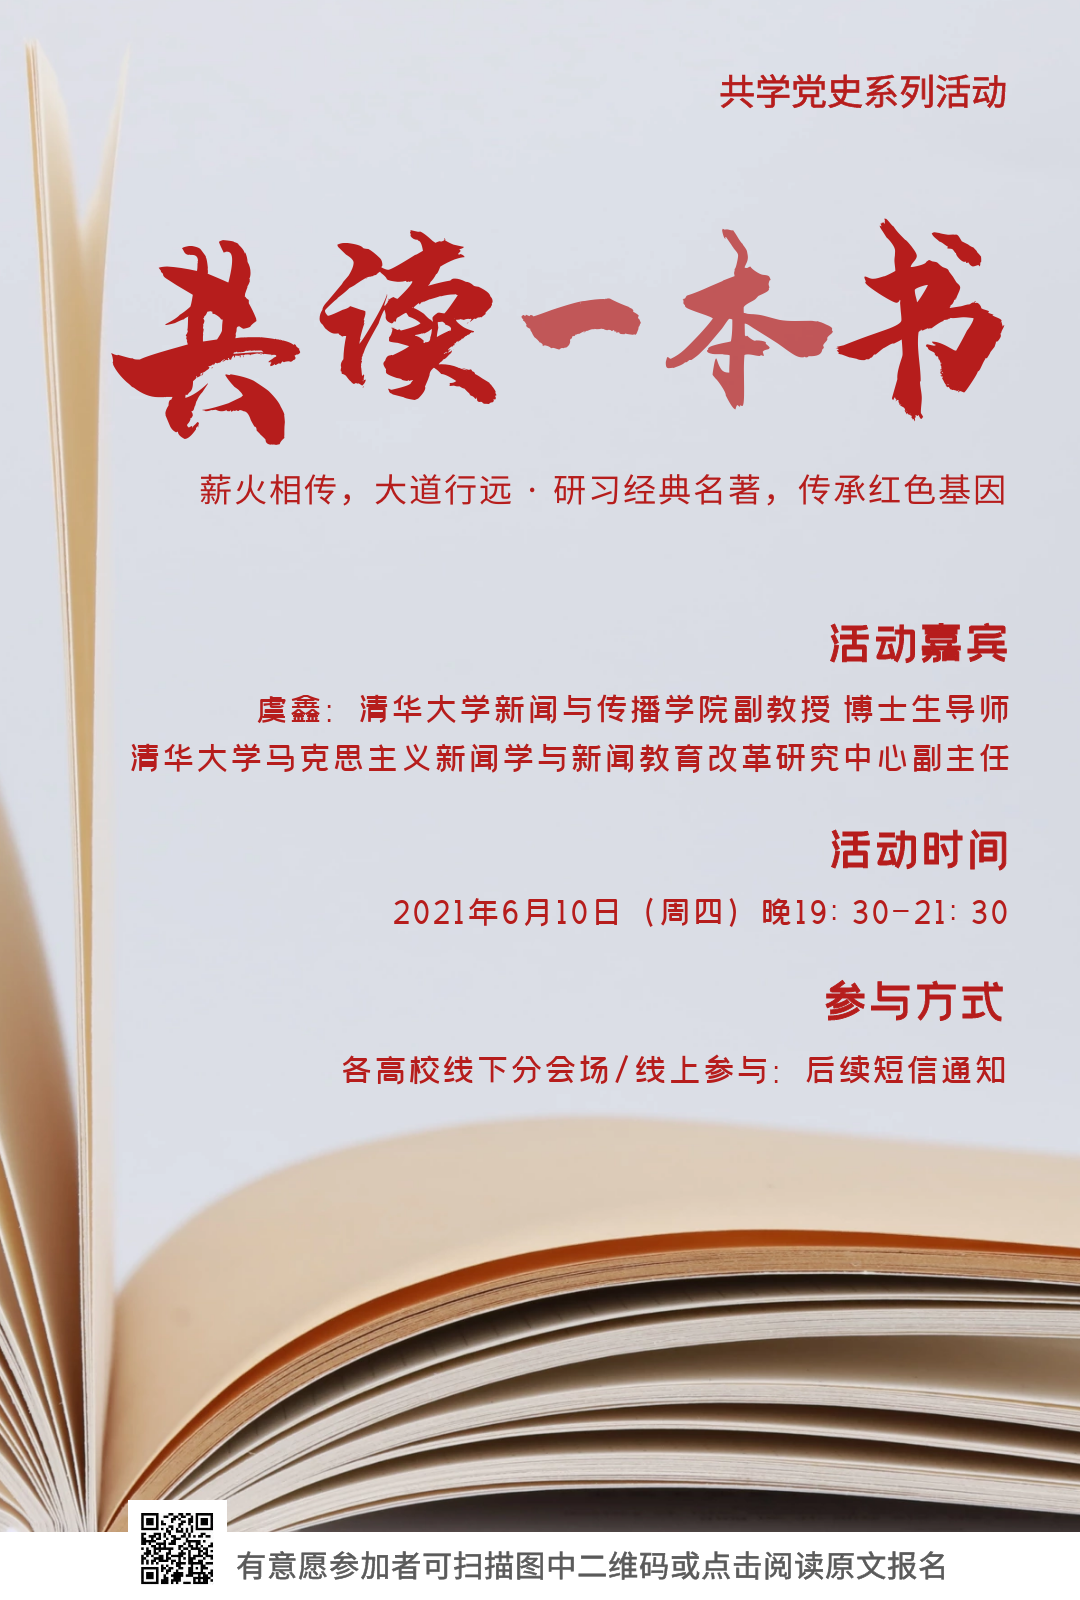 北京高校新闻传播学子 共学党史 系列活动 共读一本书